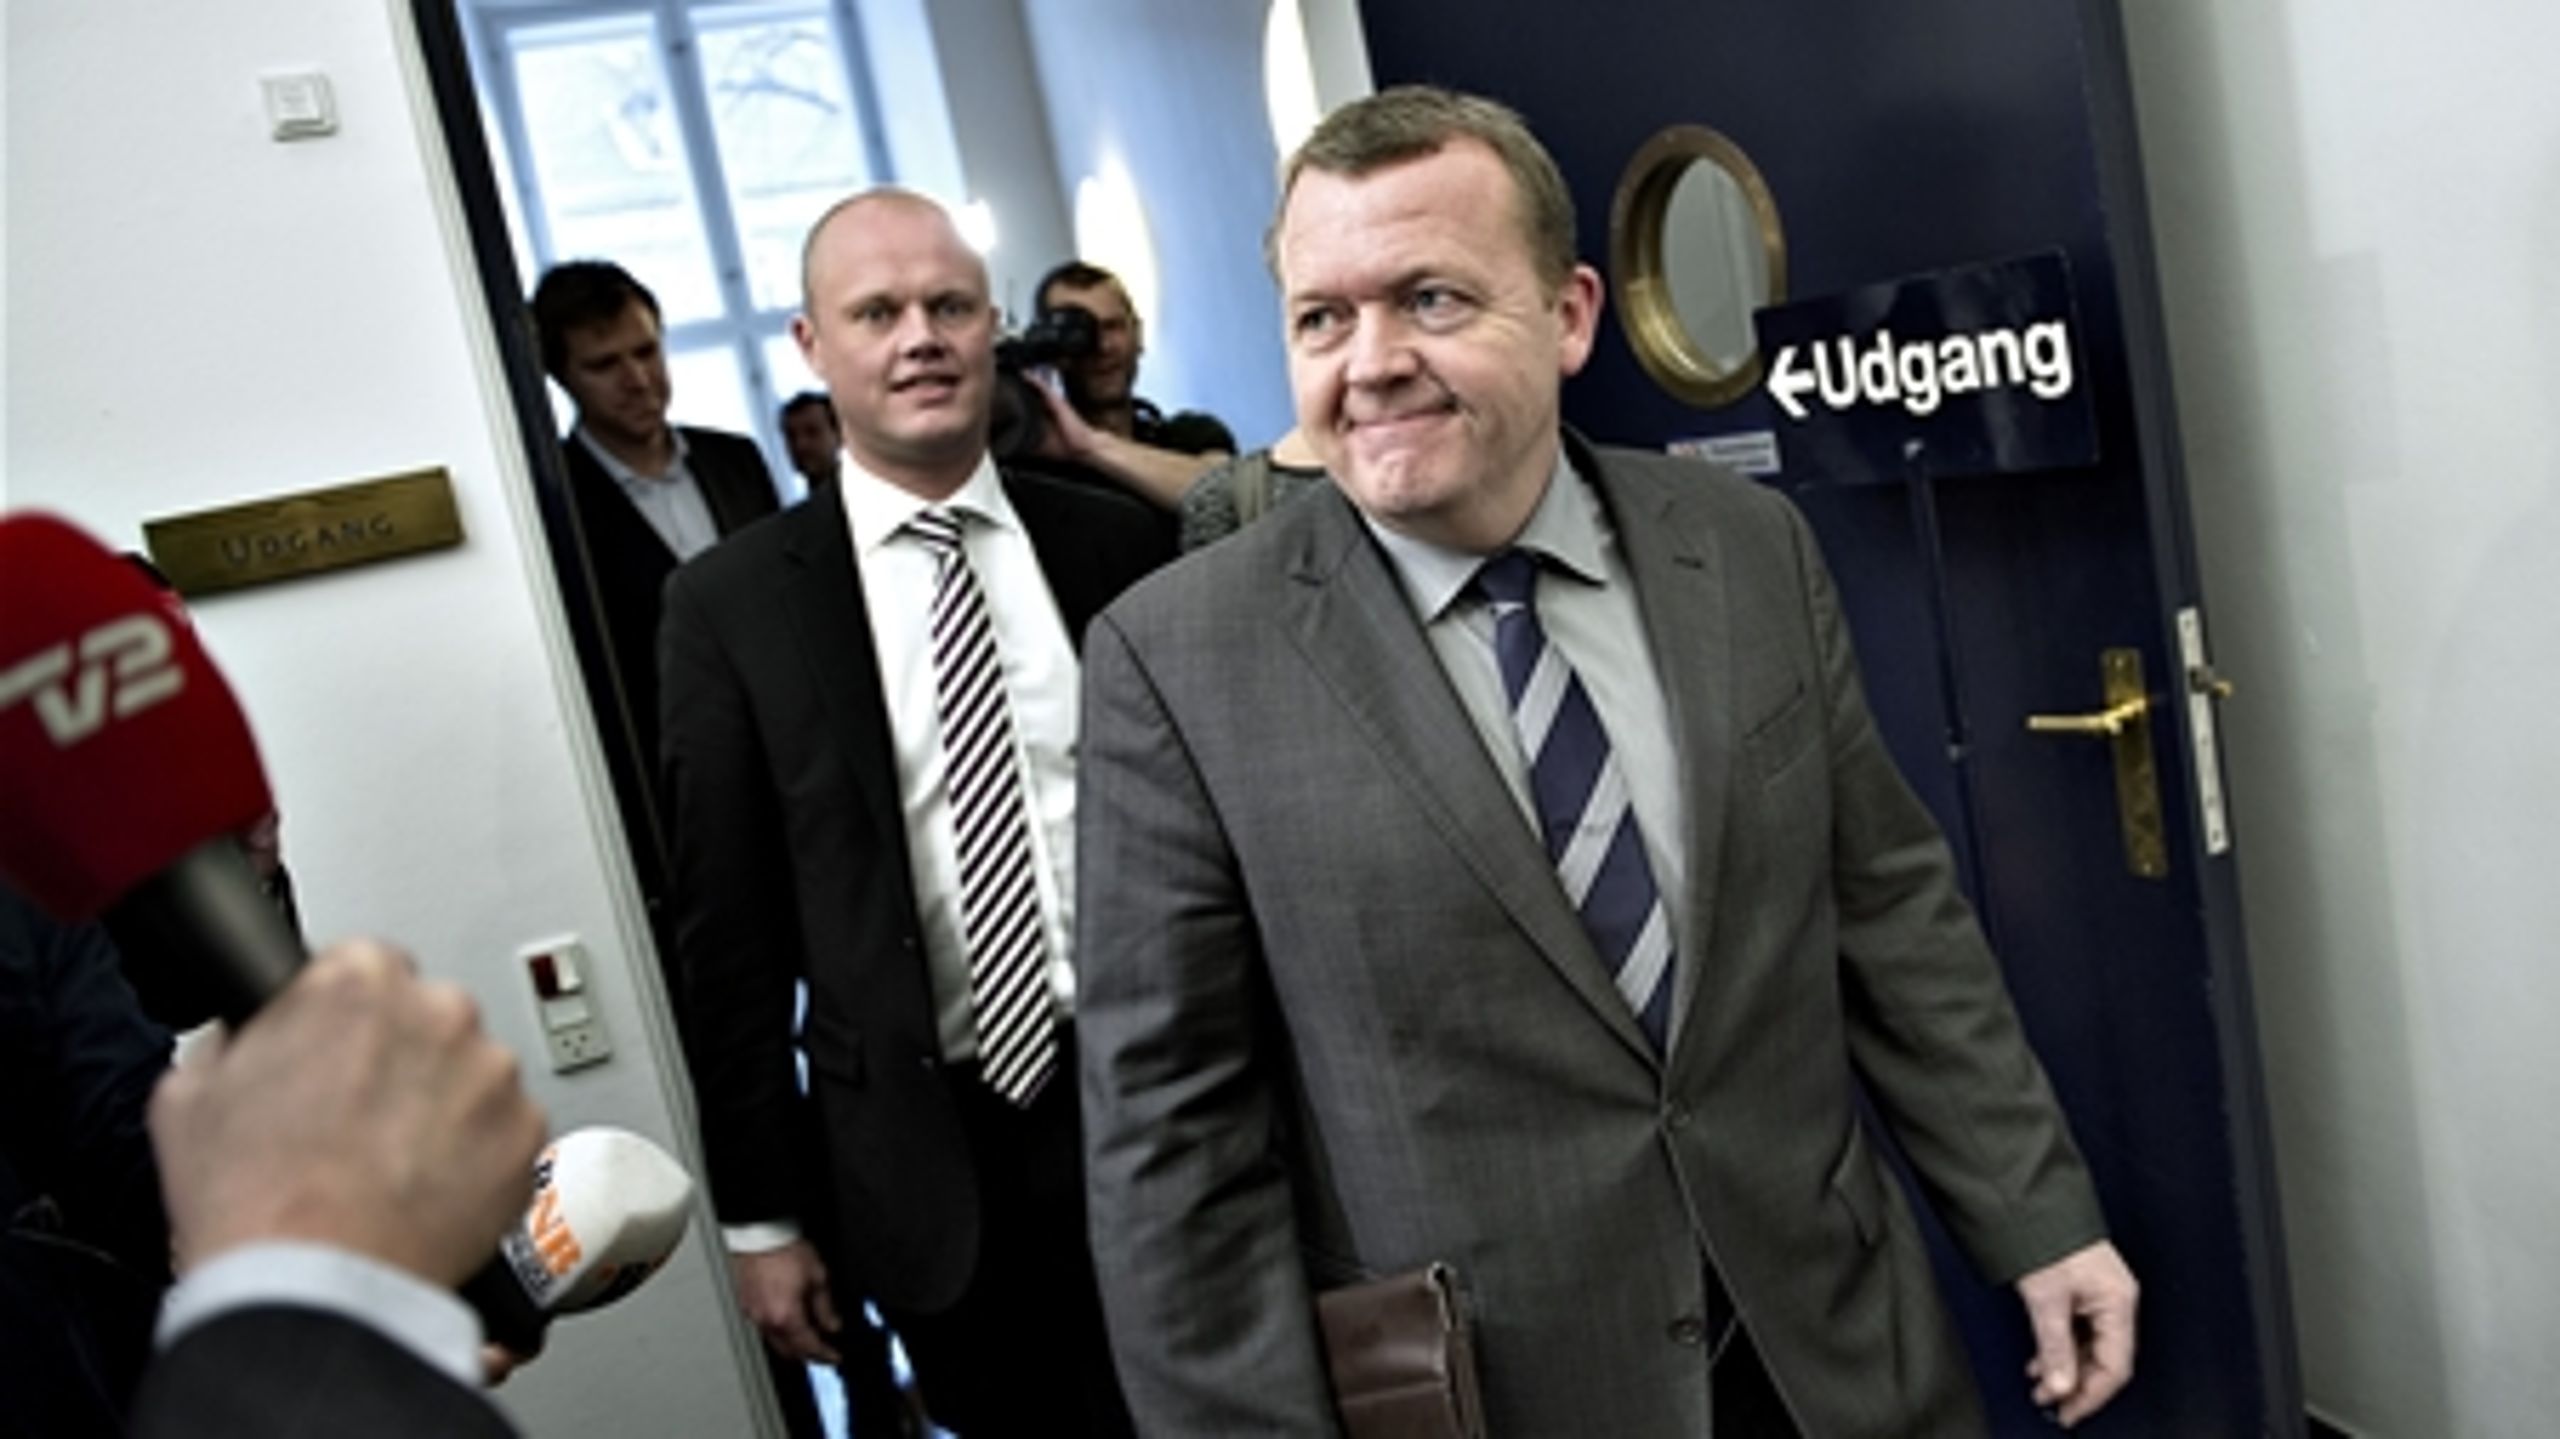 Tirsdag eftermiddag gik Lars Løkke ind ad døren i Finansministeriet. Da han trådte ud igen, var der lavet en finanslovsaftale. 